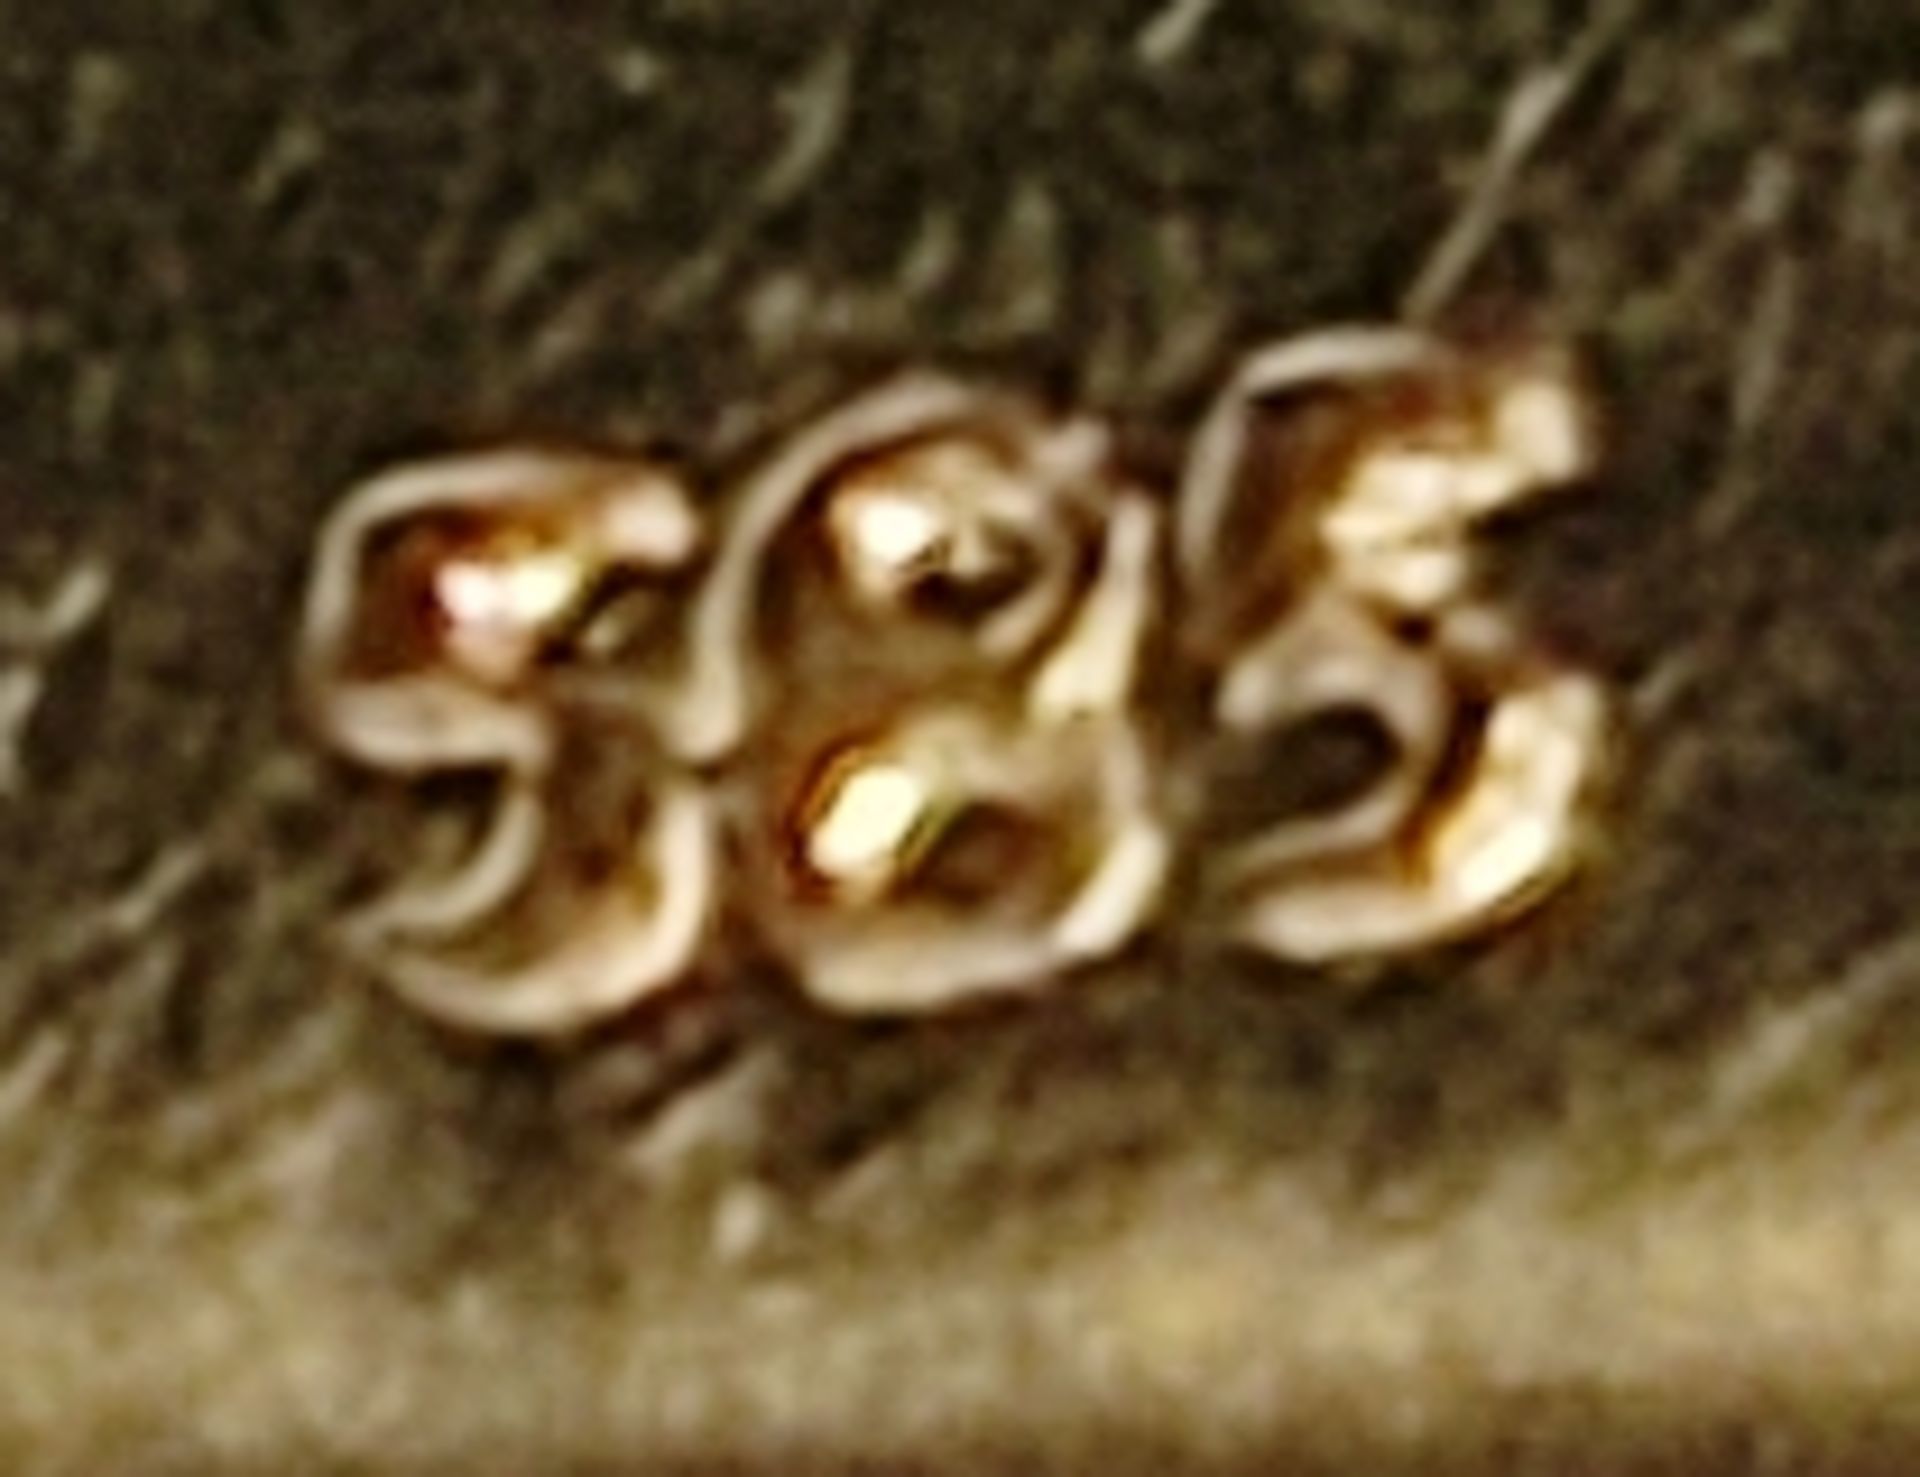 Anhänger, mittig großer Türkis-Cabochon (19,2x13,5mm), eingefasst in herzförmigen Spiral-Elementen, - Bild 2 aus 2